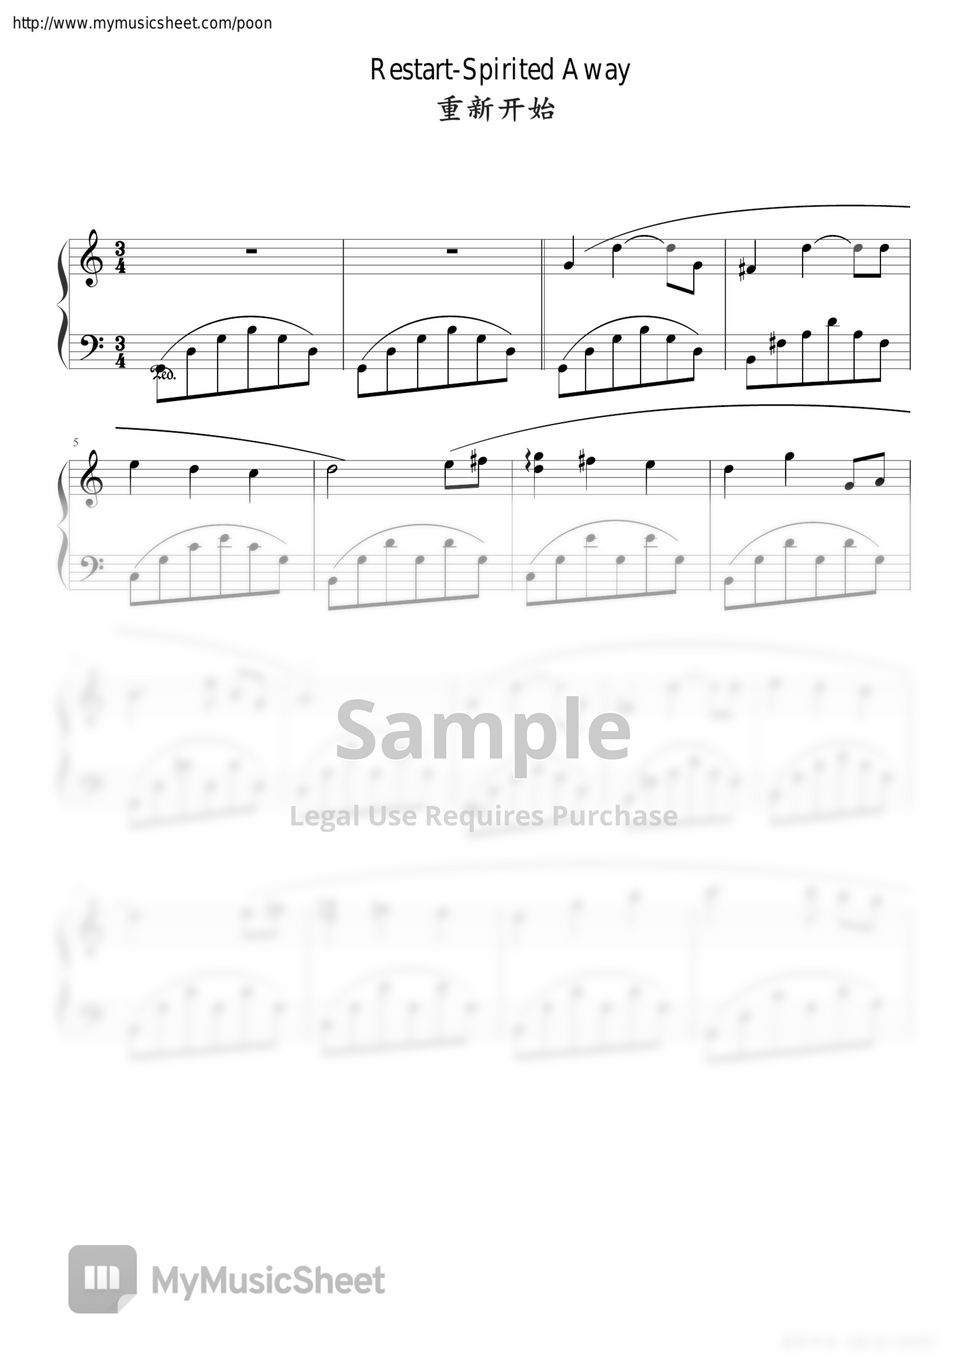 Joe Hisaishi - 久石让 ひさいし じょう Joe Hisaishi restart Spirited Away C major piano solo sheet (easy edition) by poon